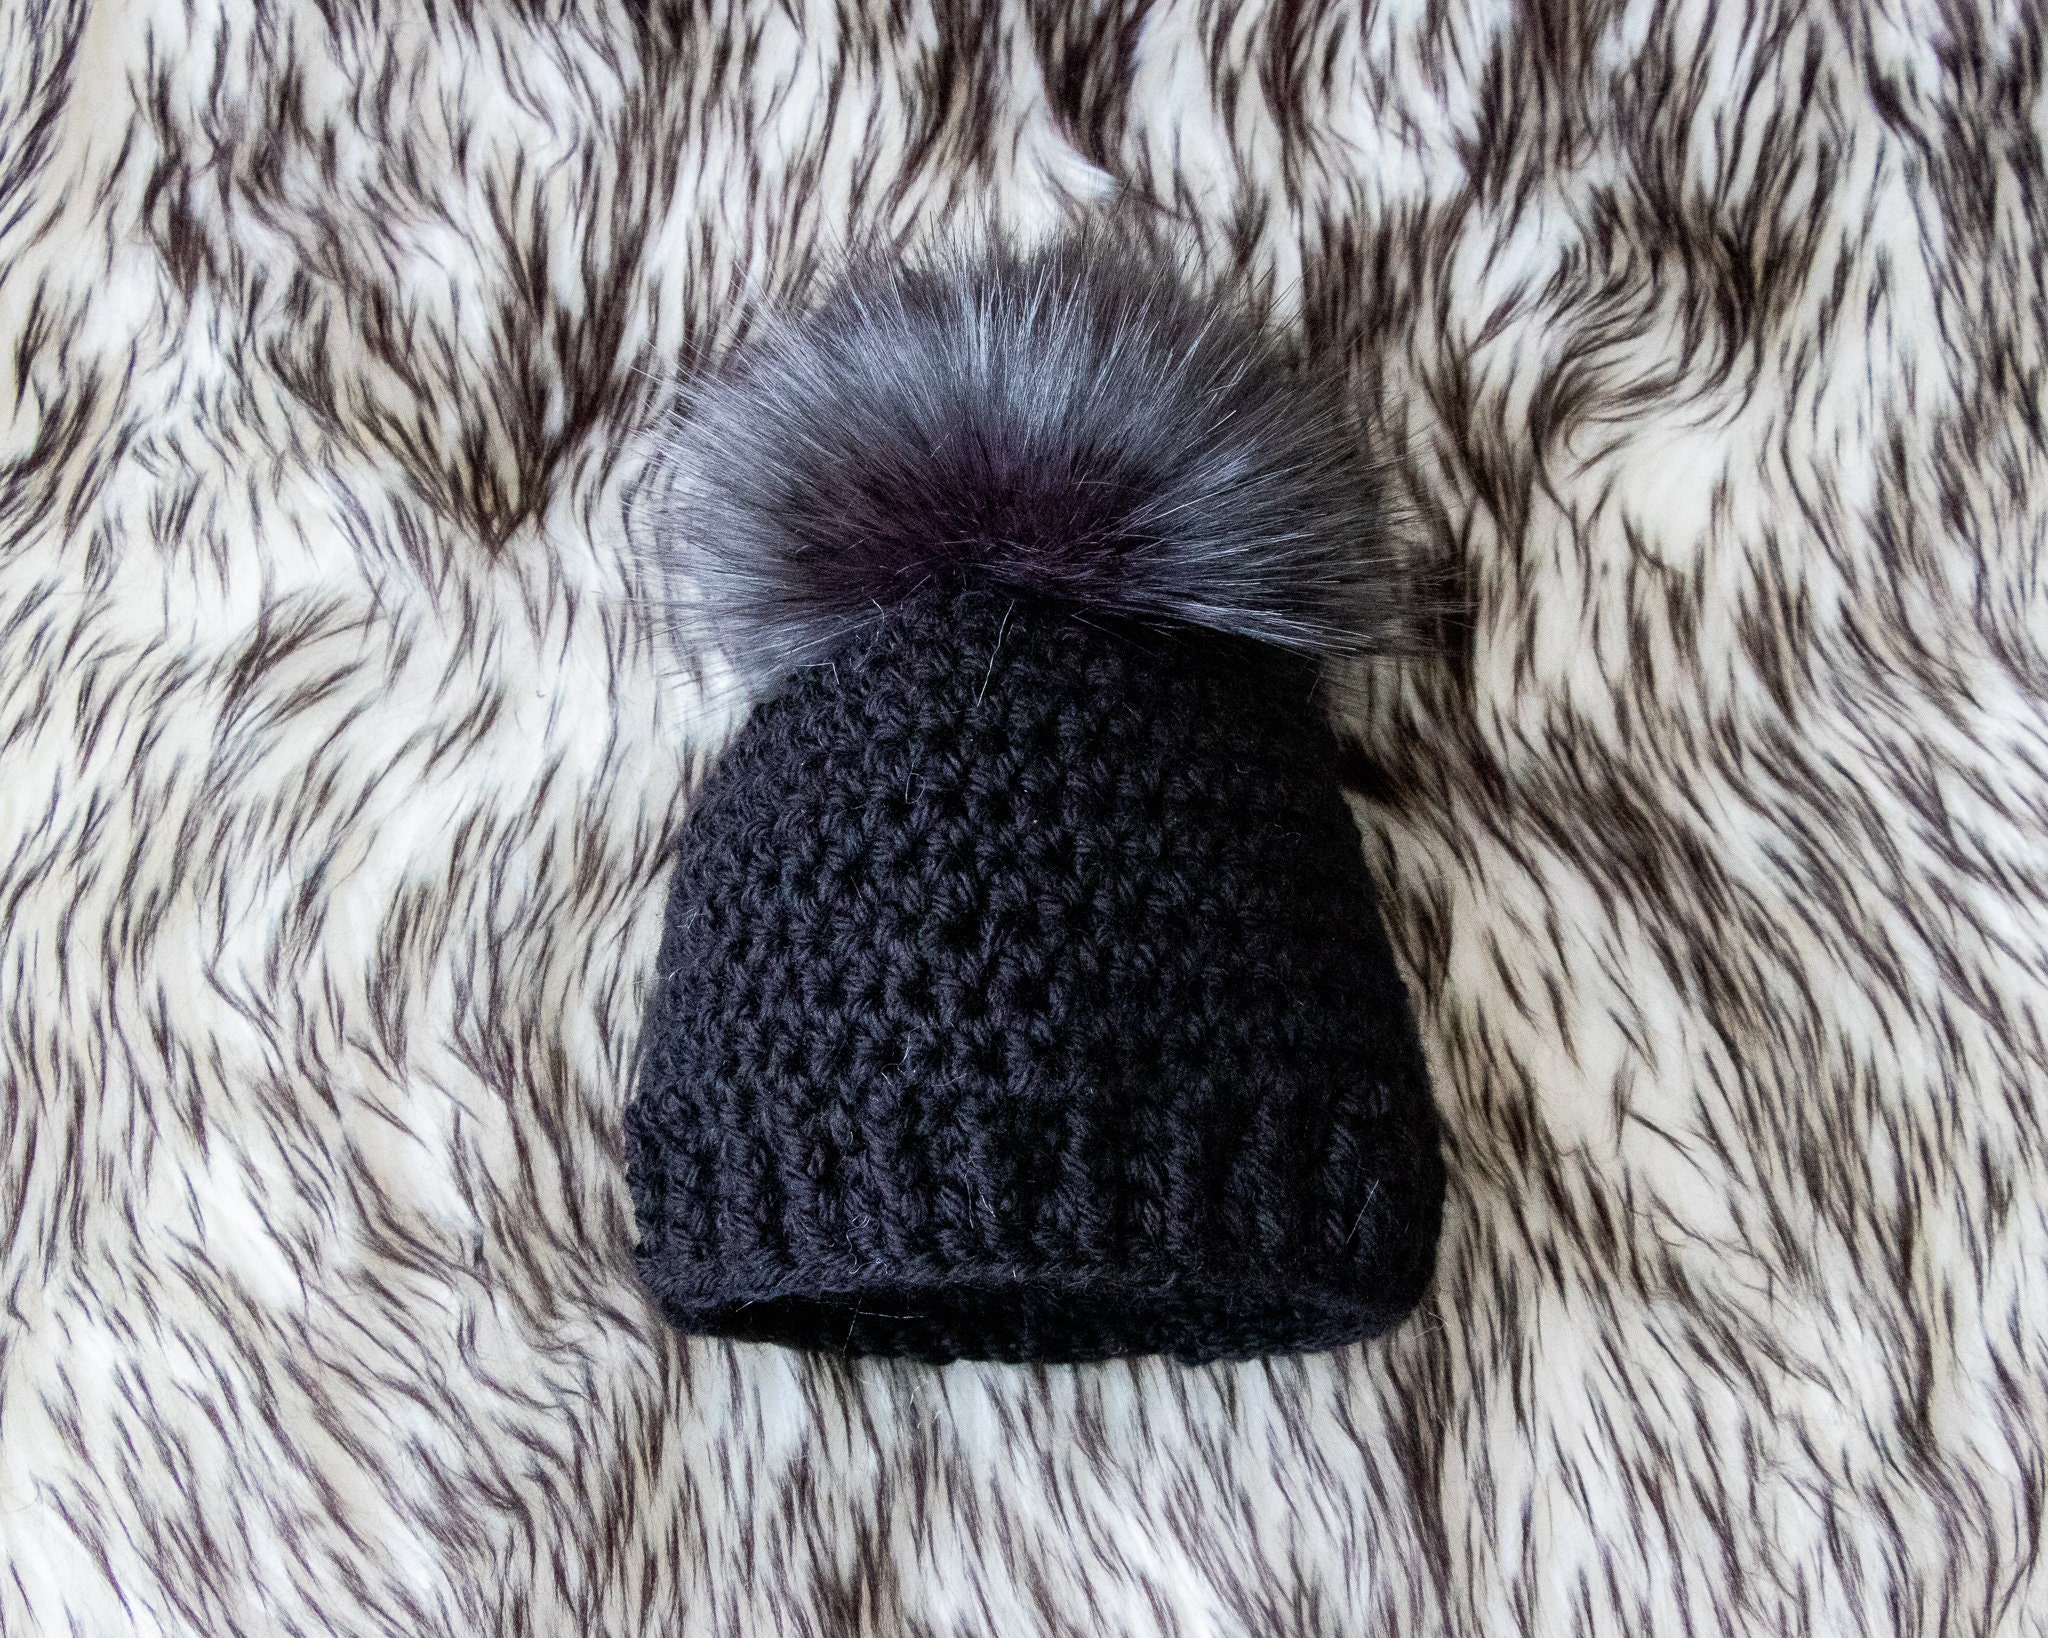 Black Faux Fur Pom Pom Hatblack Faux Fur Pom Pom Hat | Winter Baby Hats | Dudis Design 9-12 Months